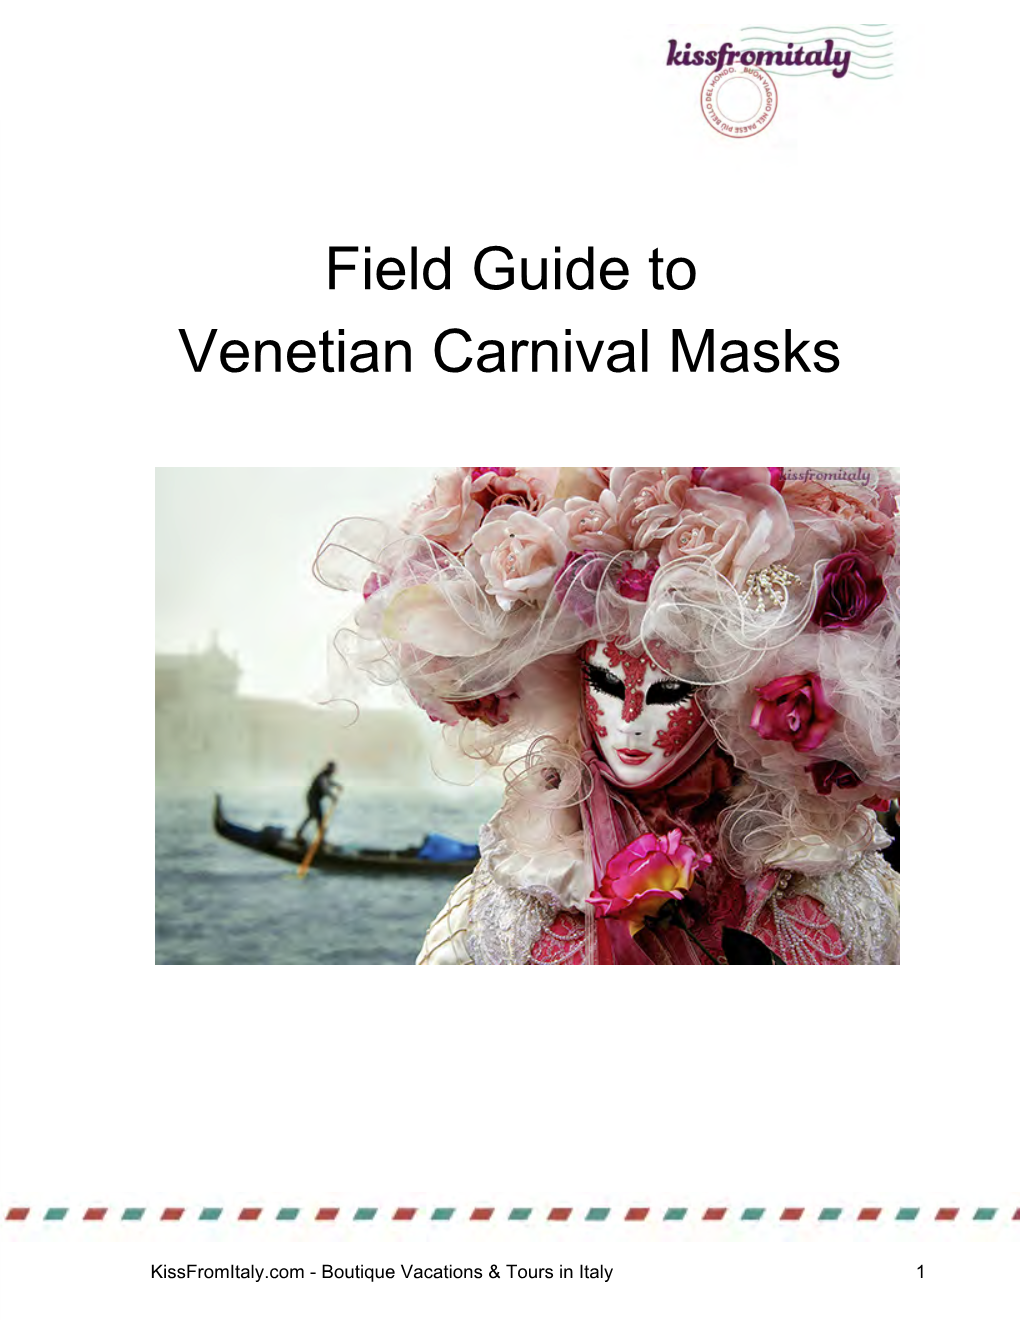 Field Guide to Venetian Carnival Masks